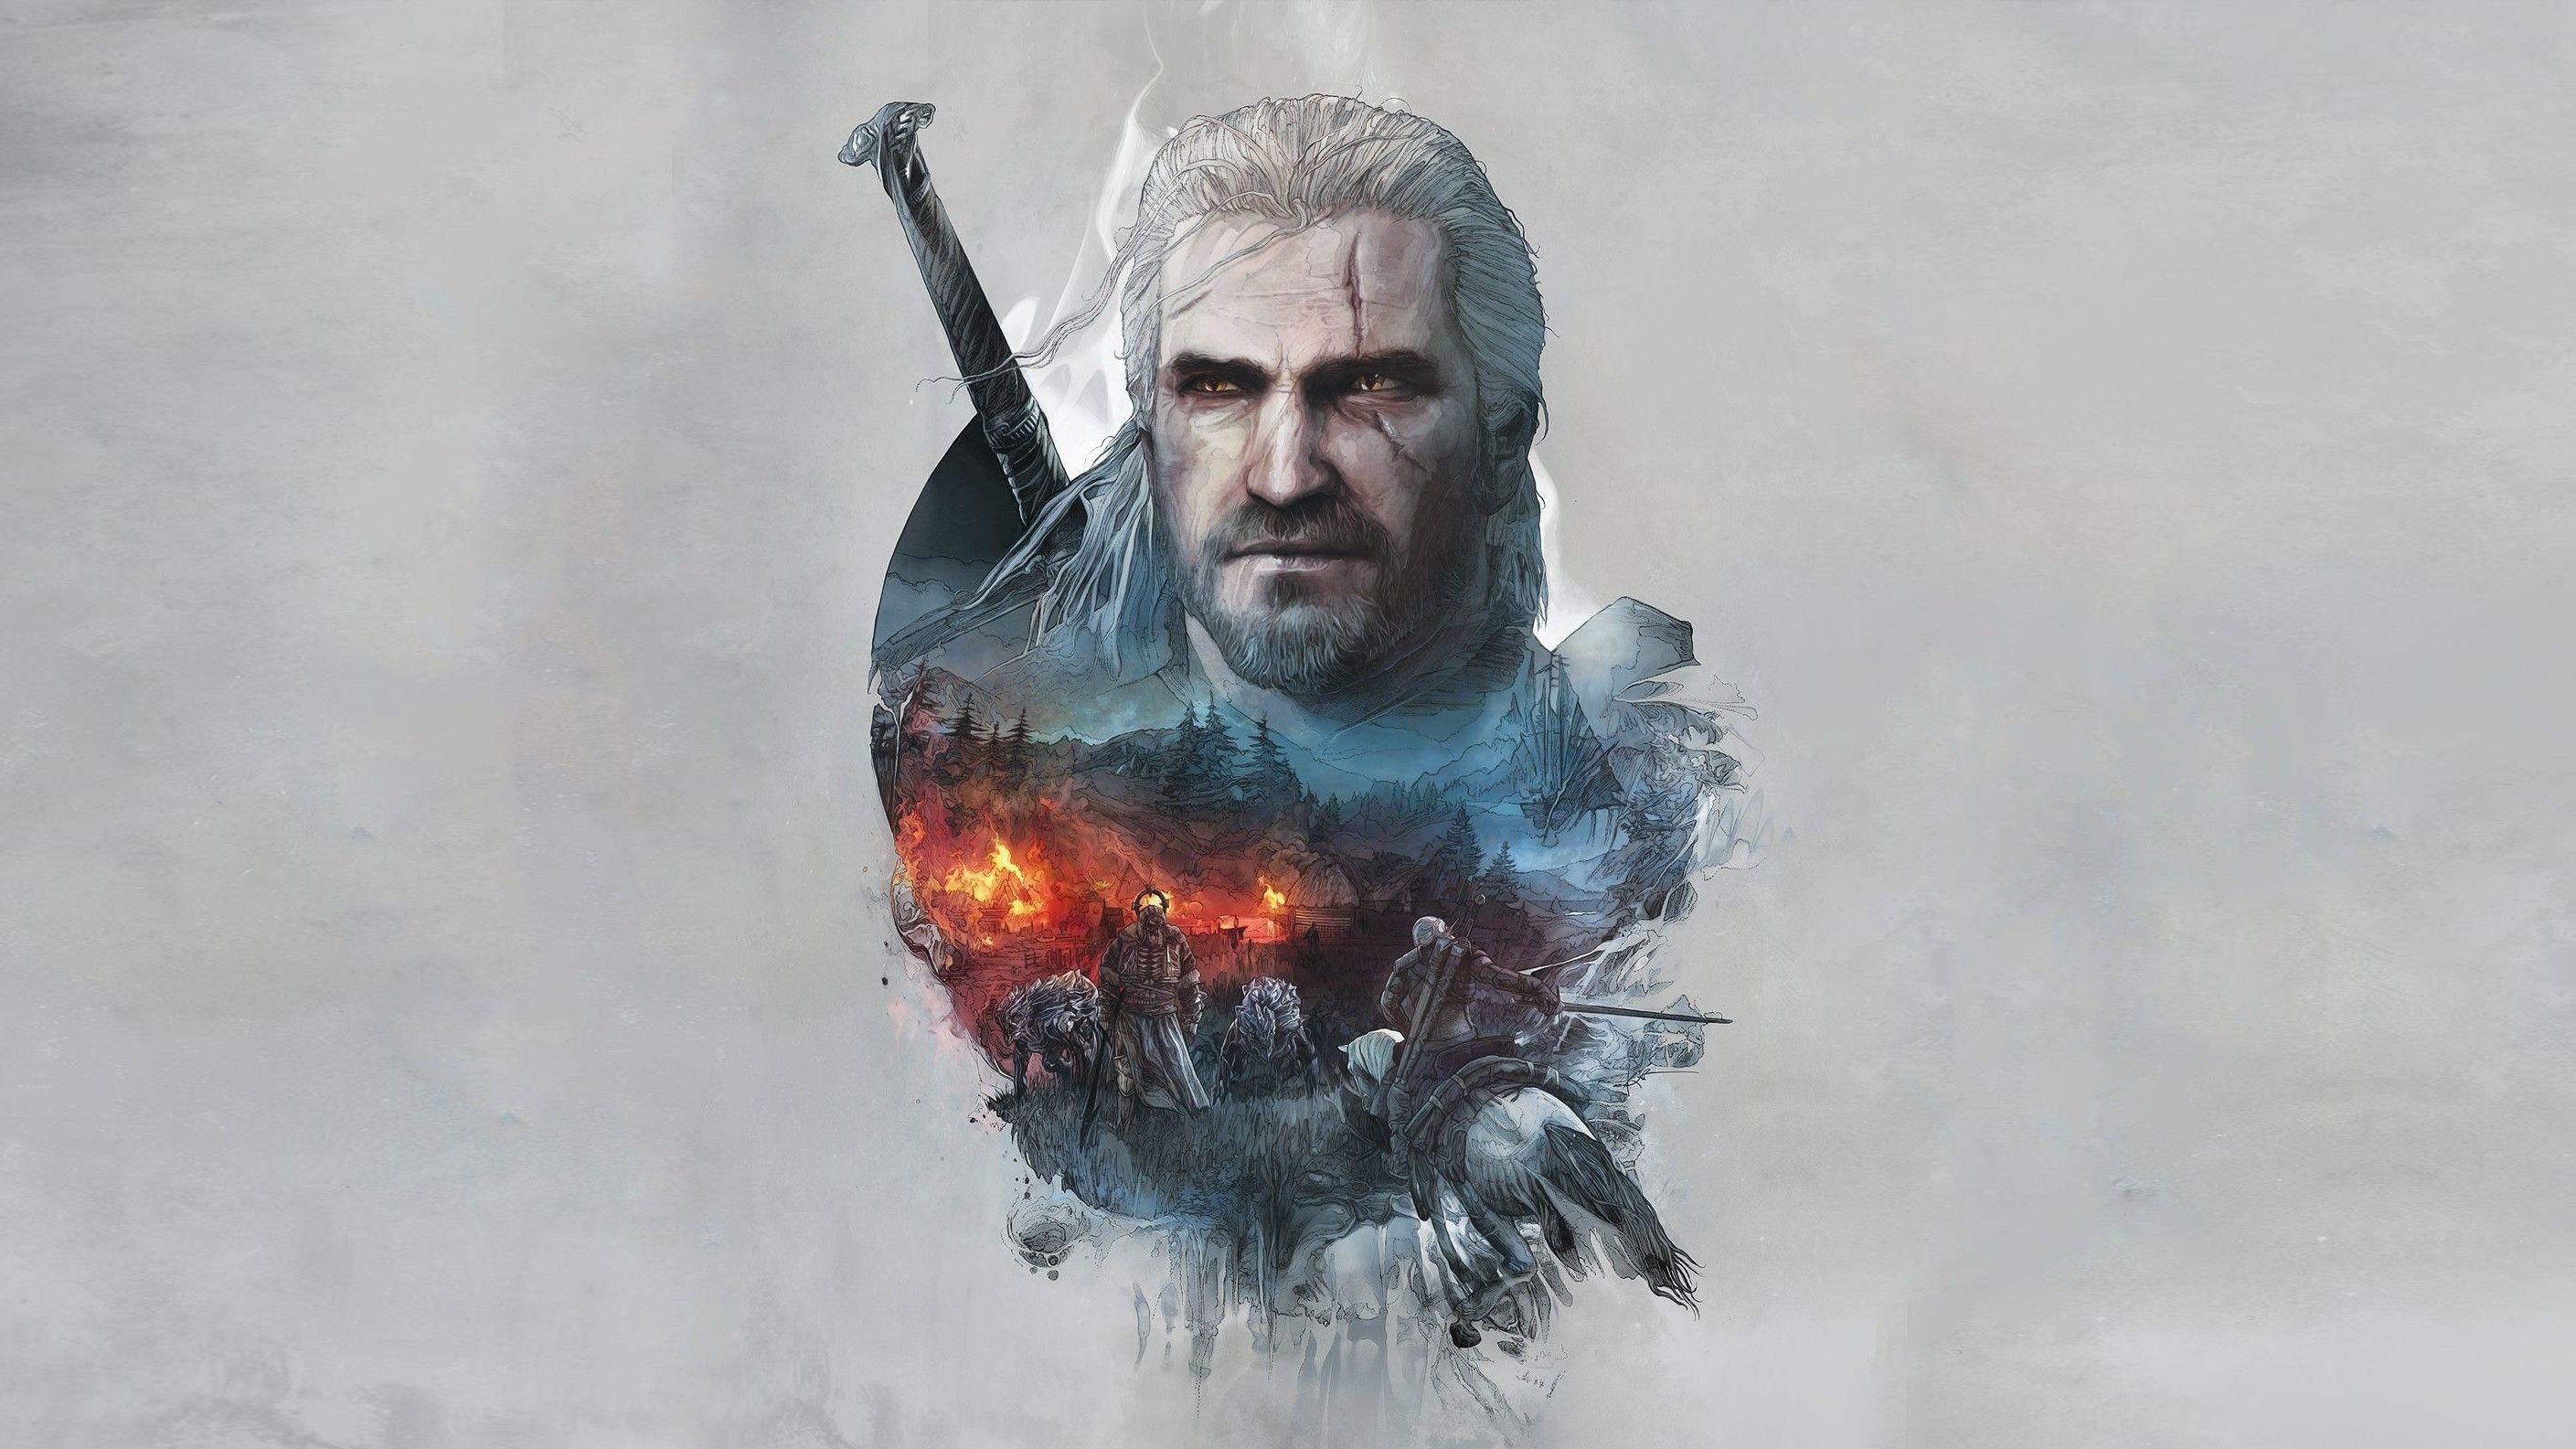 The Witcher 3 Geralt of Rivia Artwork, HD Games, 4k Wallpaper